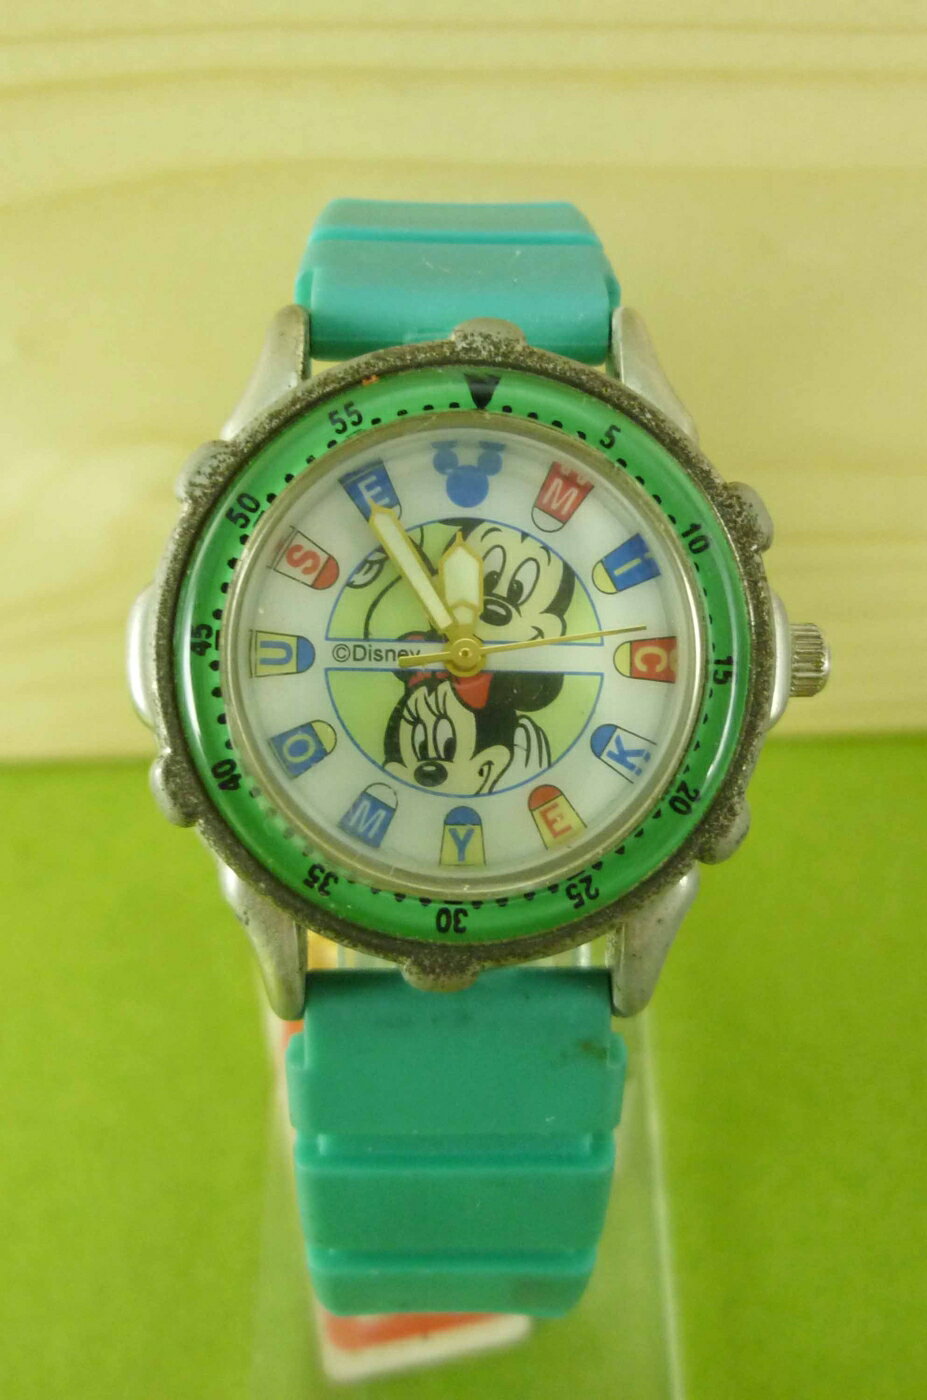 【震撼精品百貨】米奇/米妮 Micky Mouse 手錶-米奇米妮大頭圖案-綠色錶帶 震撼日式精品百貨